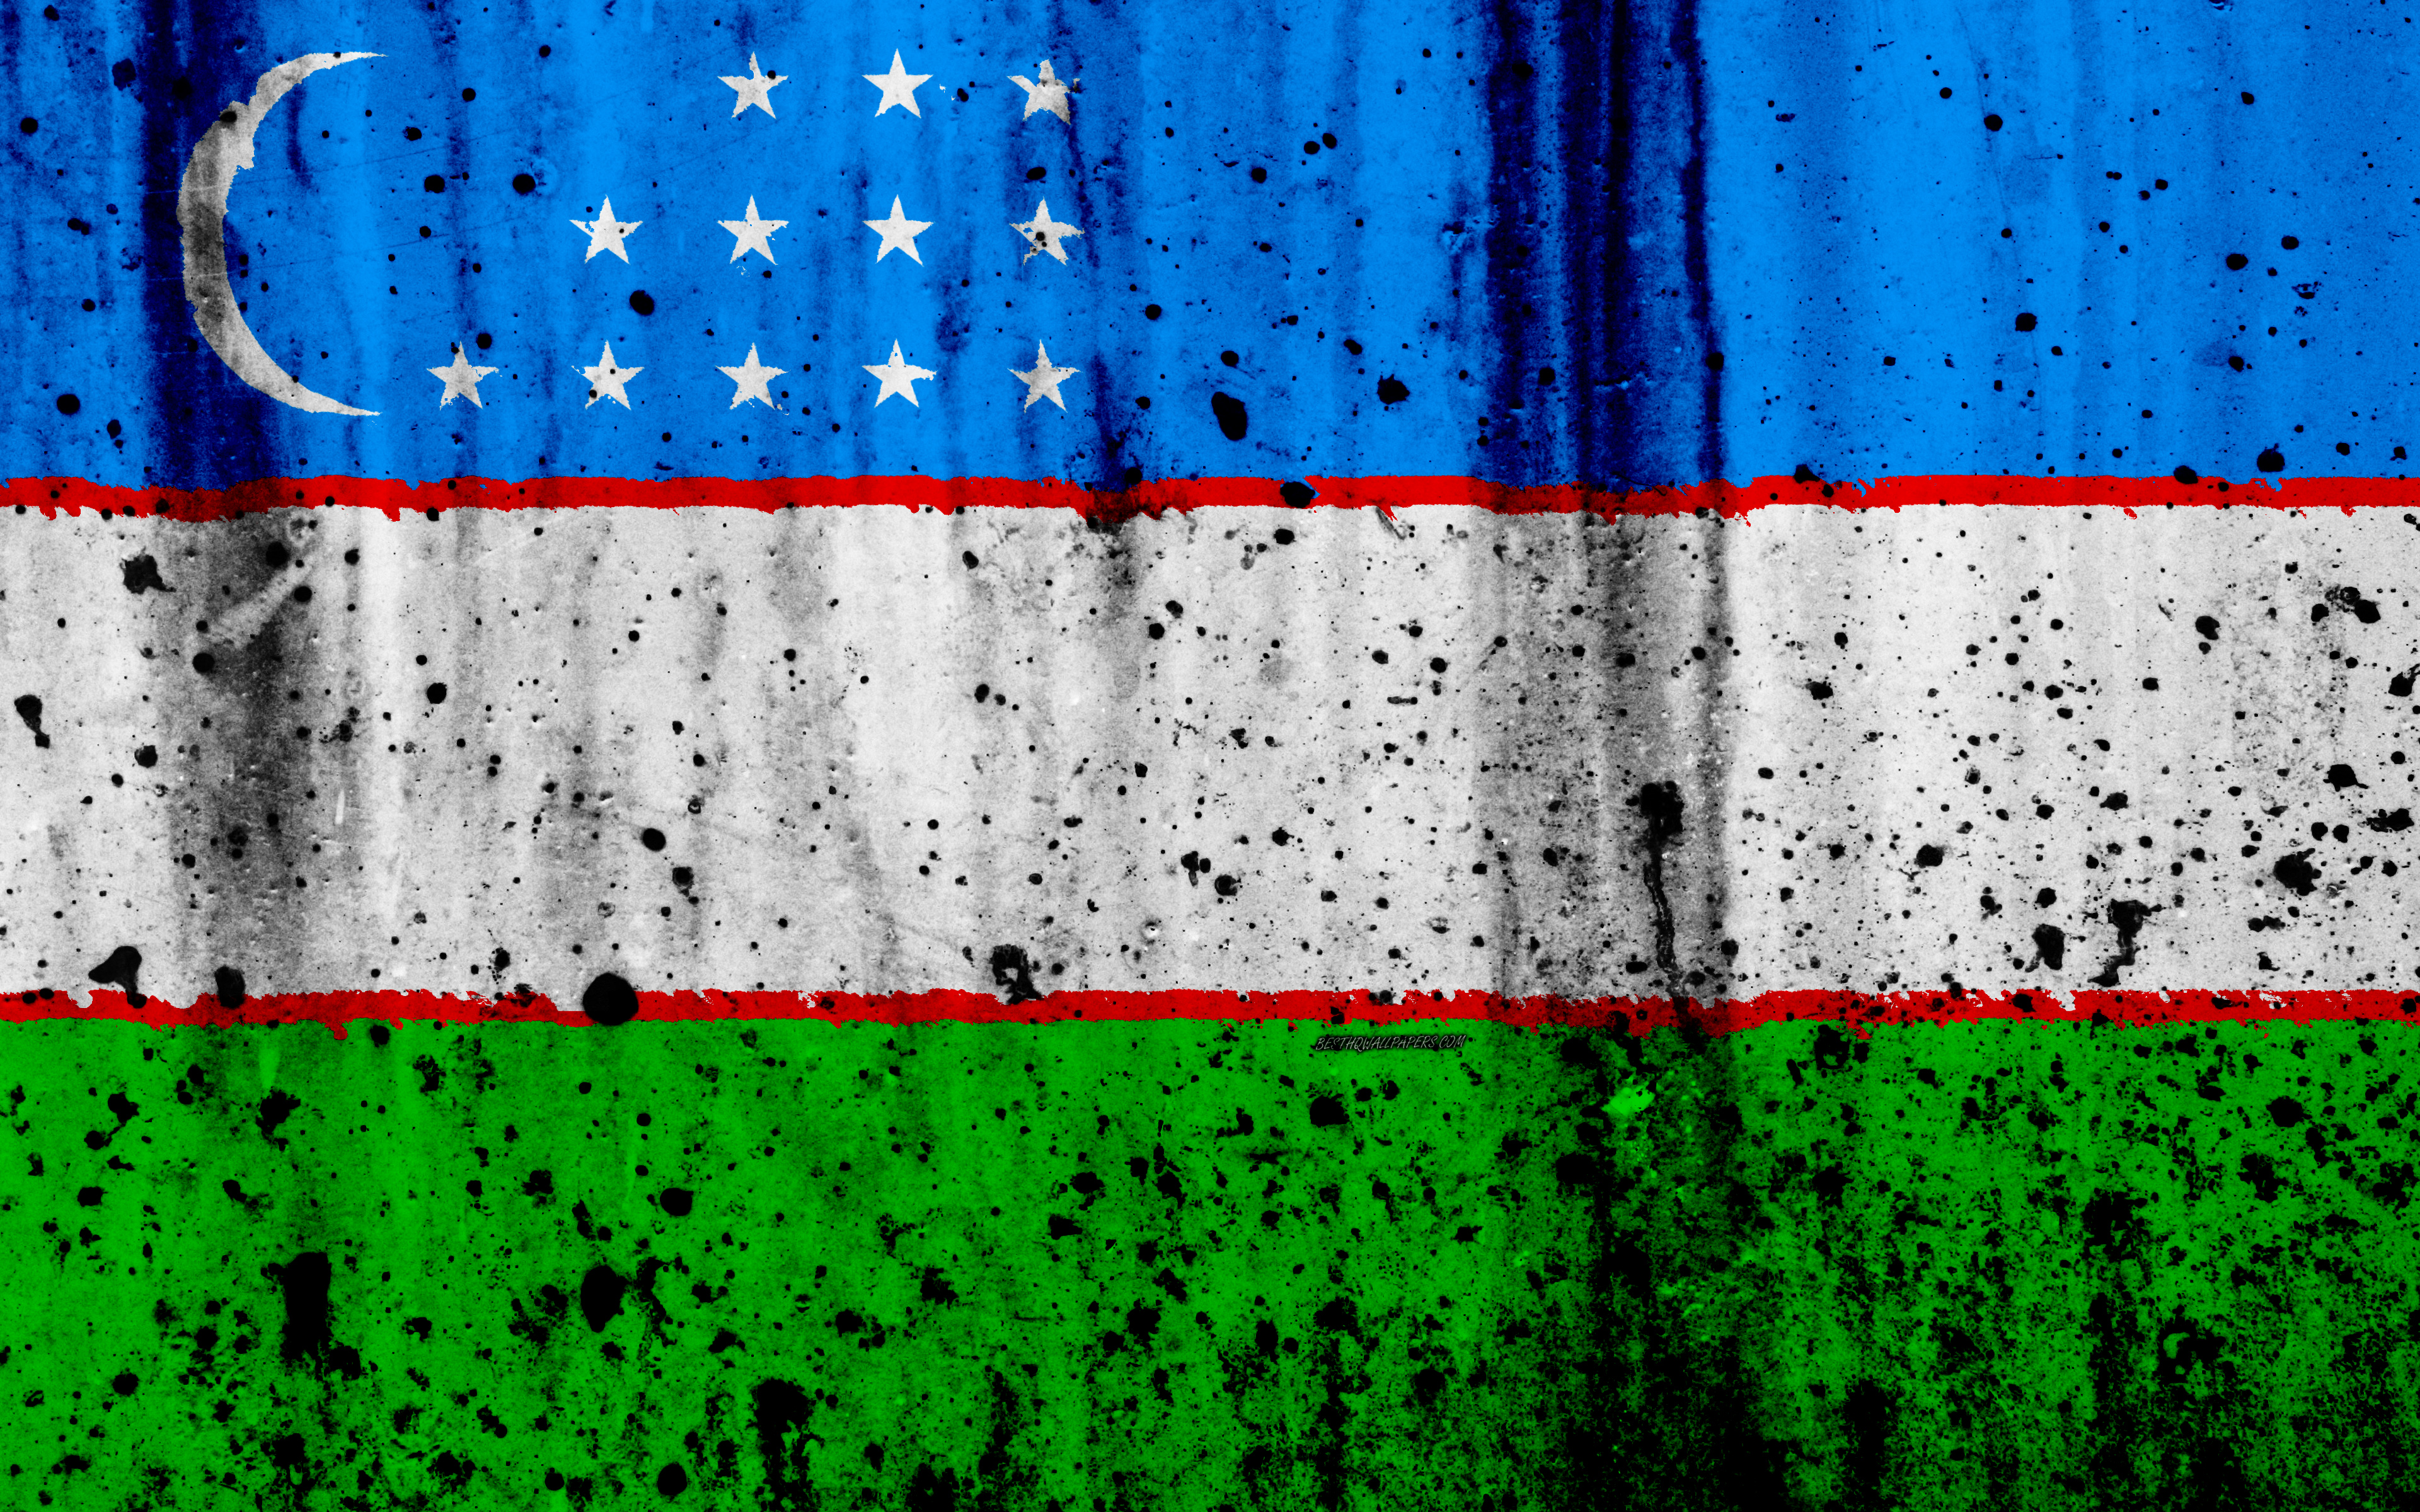 Download wallpapers Uzbek flag, 4k, grunge, flag of Uzbekistan, Asia ...